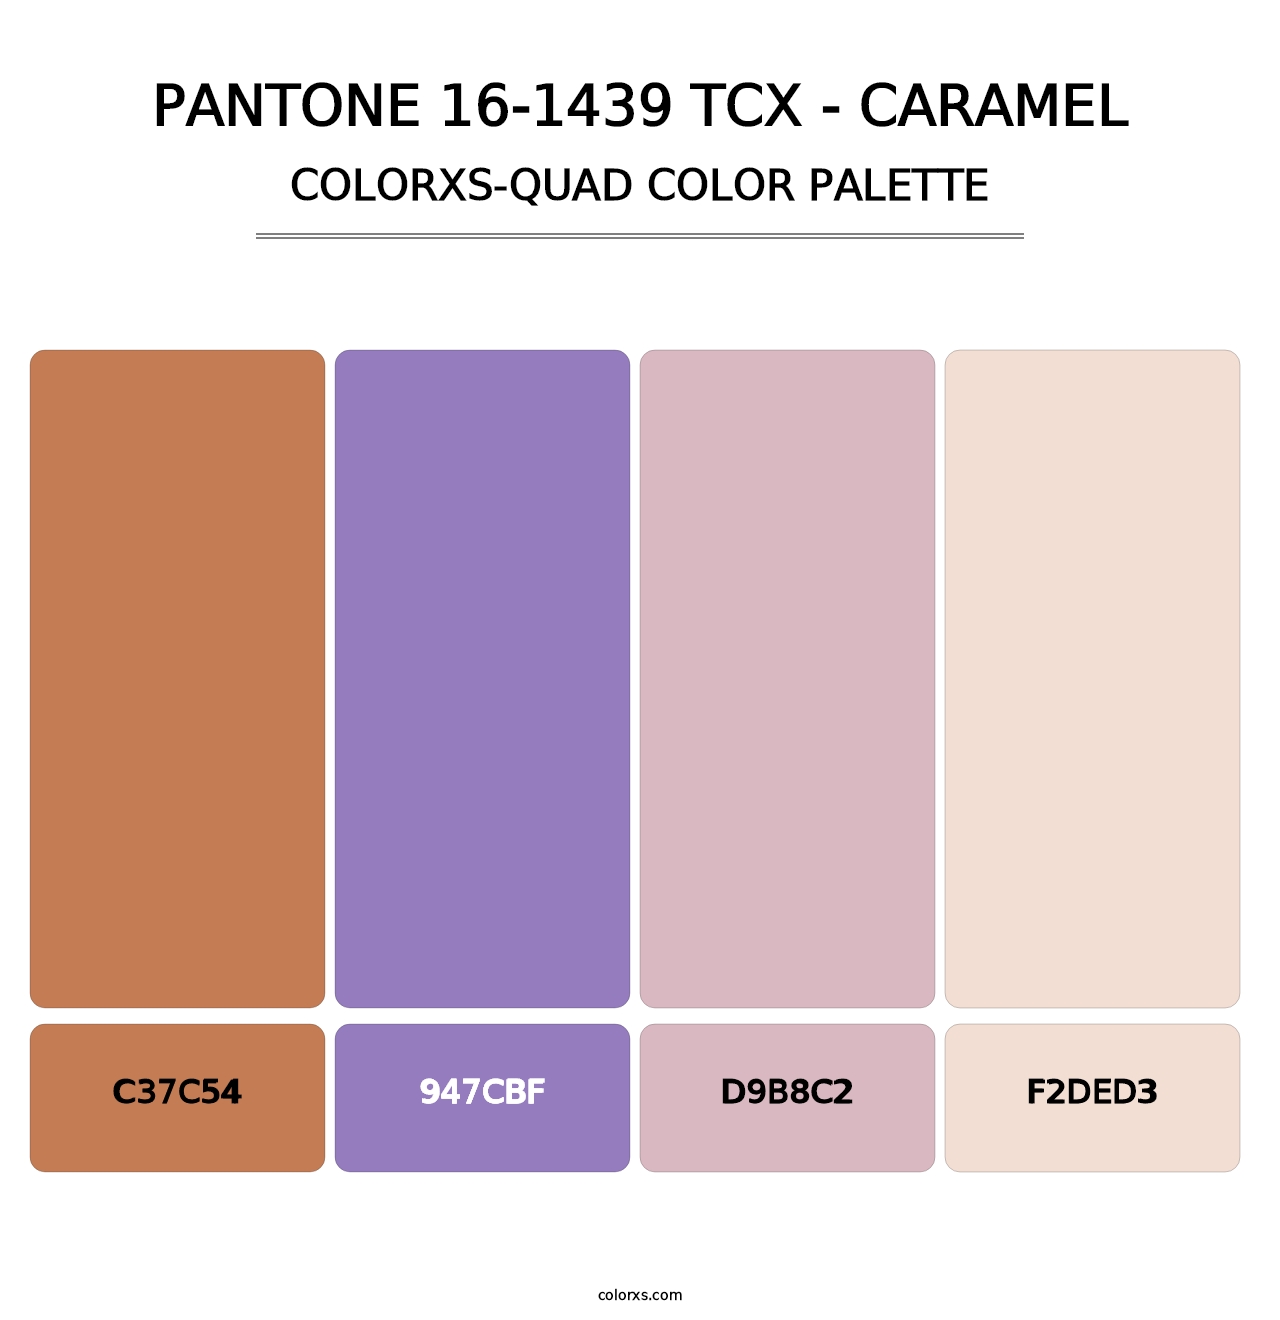 PANTONE 16-1439 TCX - Caramel - Colorxs Quad Palette